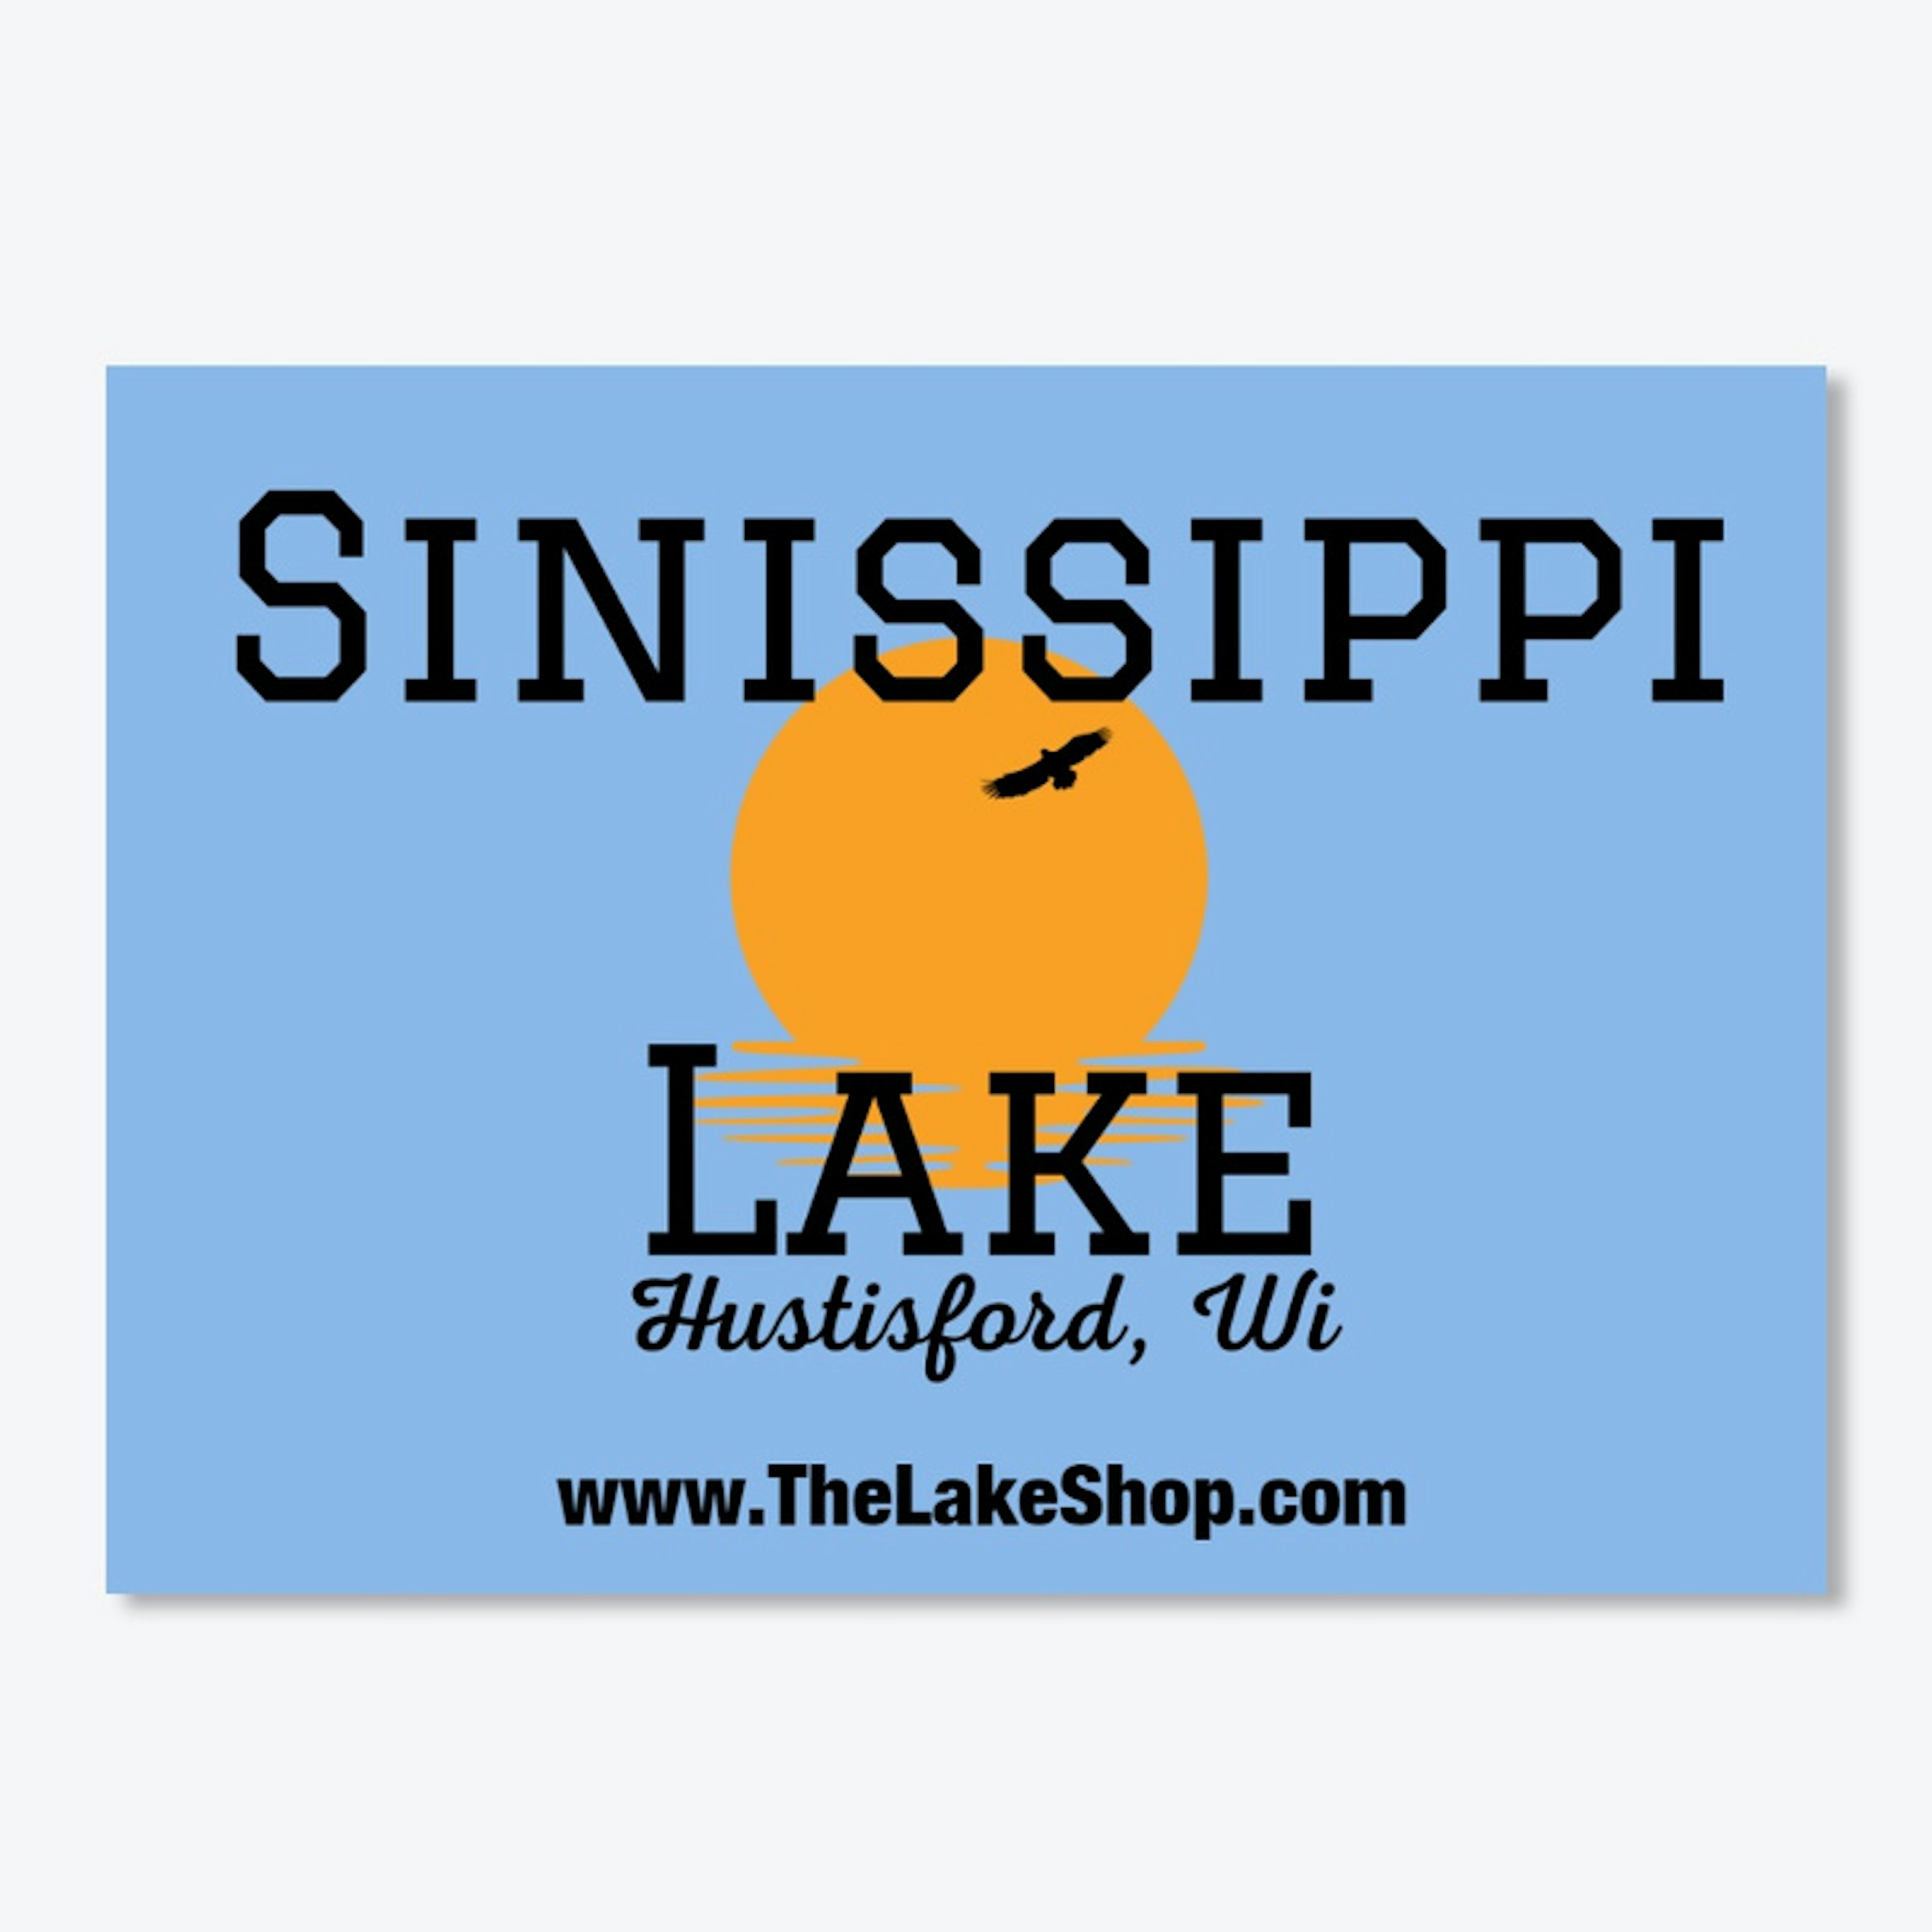 Sinissippi Lake